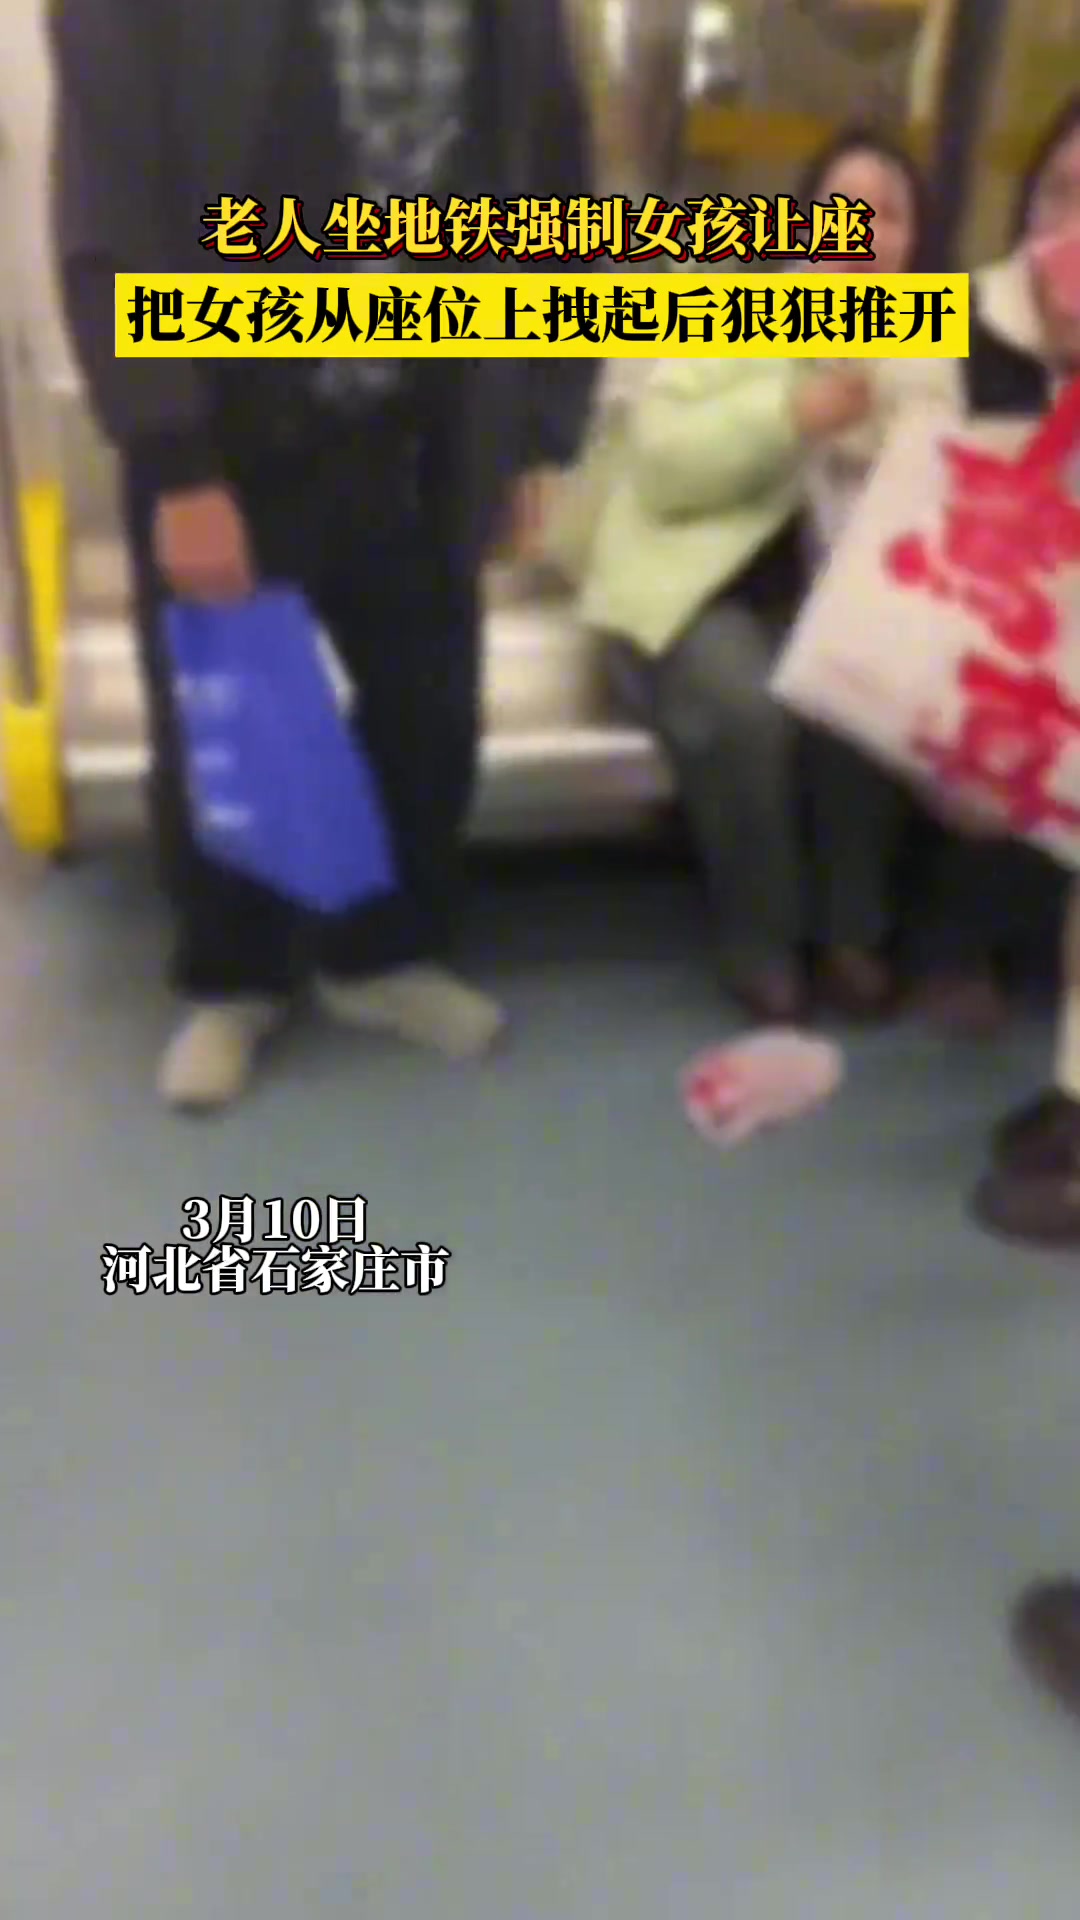 老人坐地铁强制女孩让座 把她从座位上拽起后狠狠推开